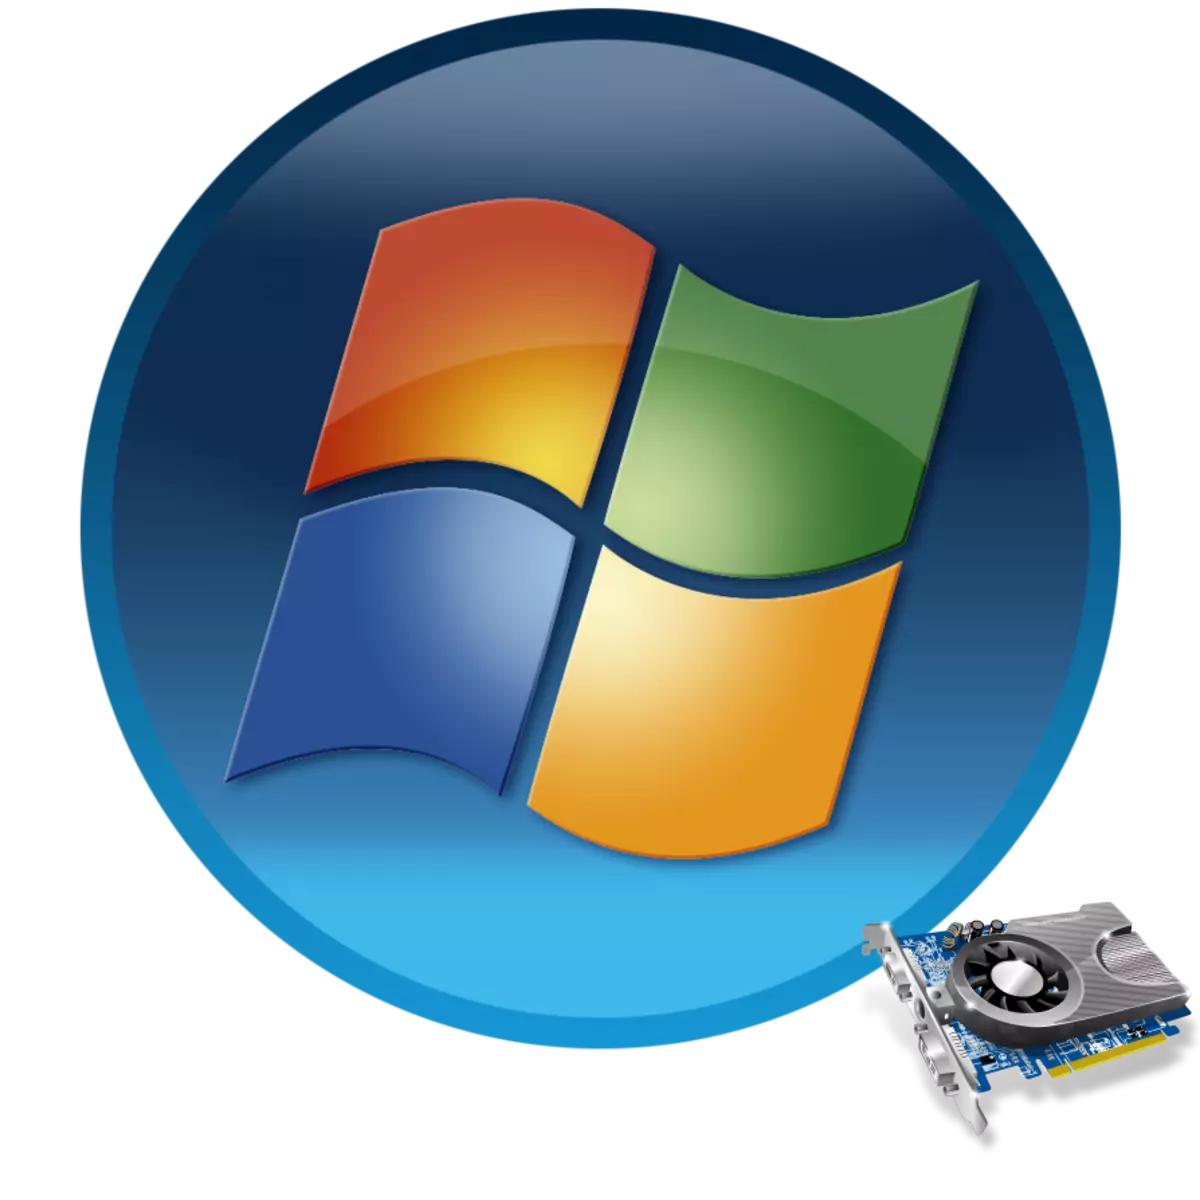 Posodabljanje gonilnikov video kartic v sistemu Windows 7